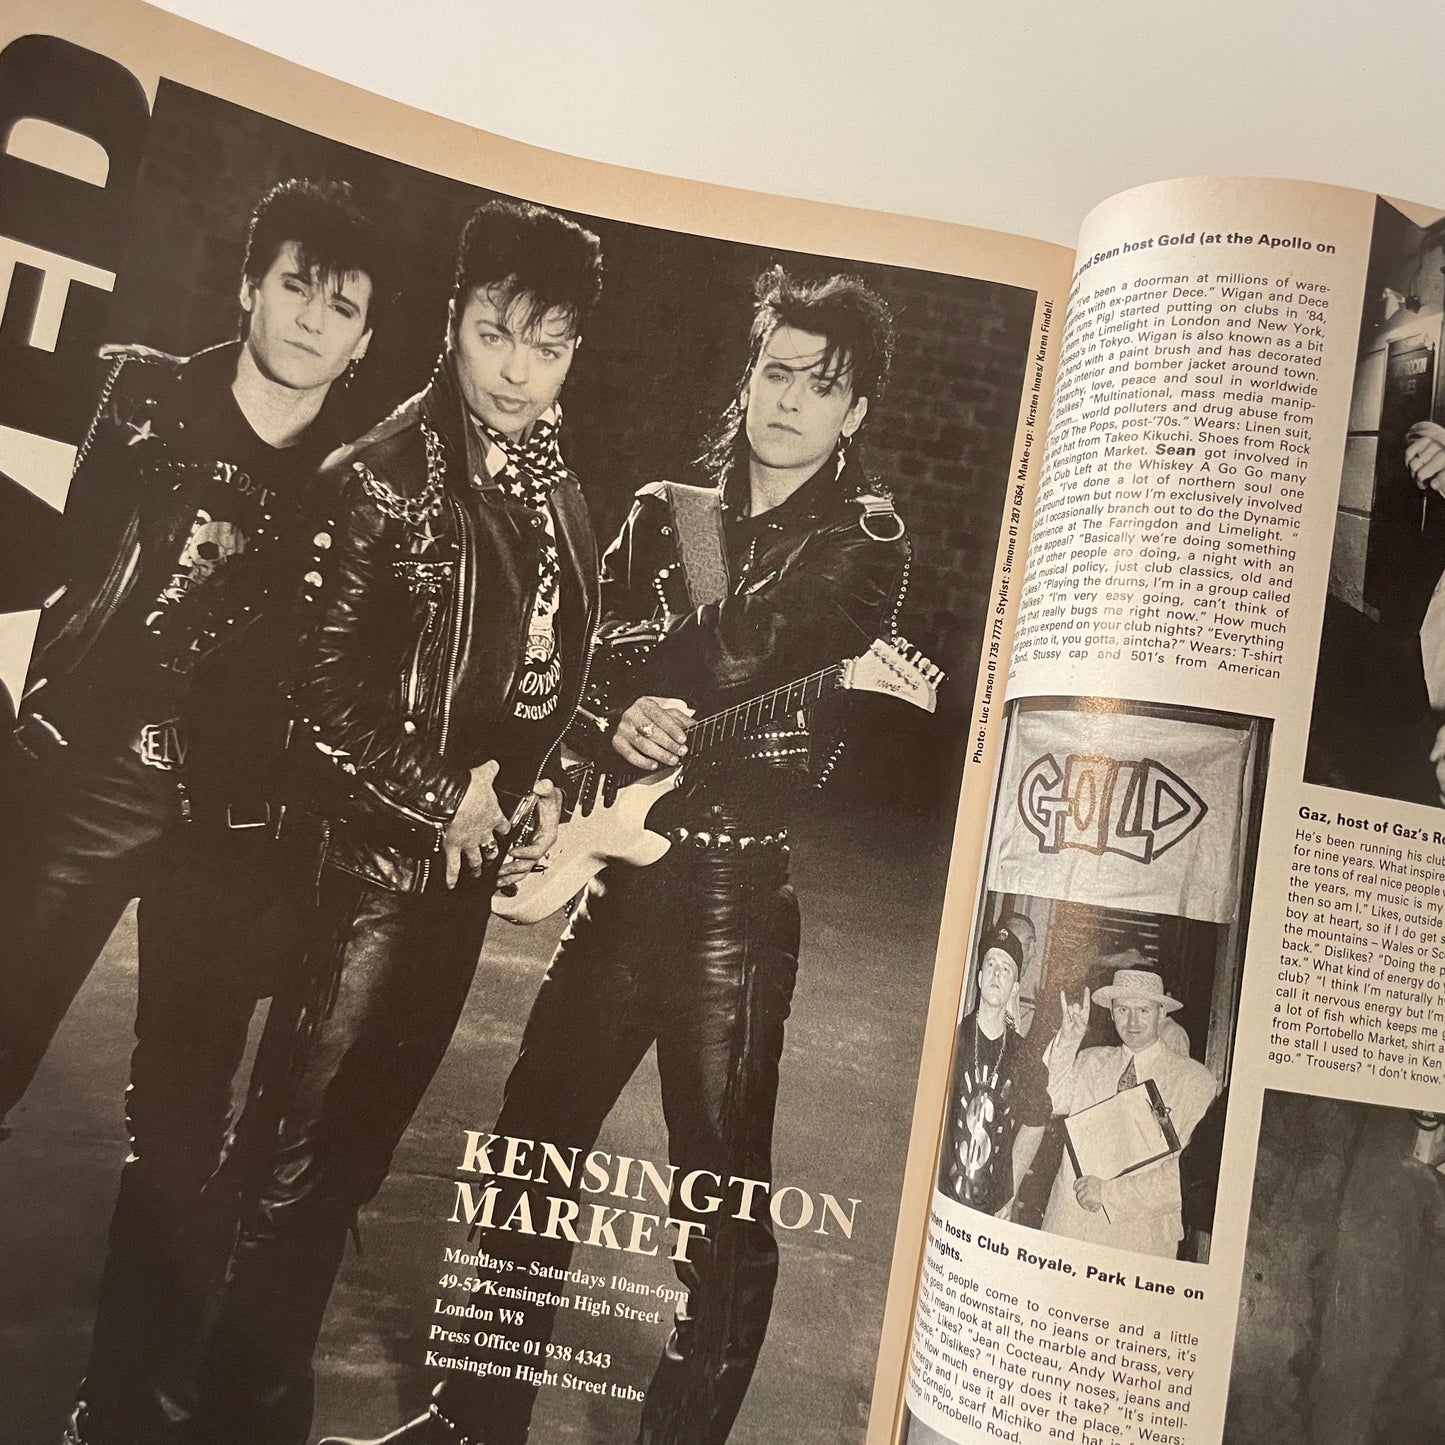 i-D Magazine No.73 1989 September